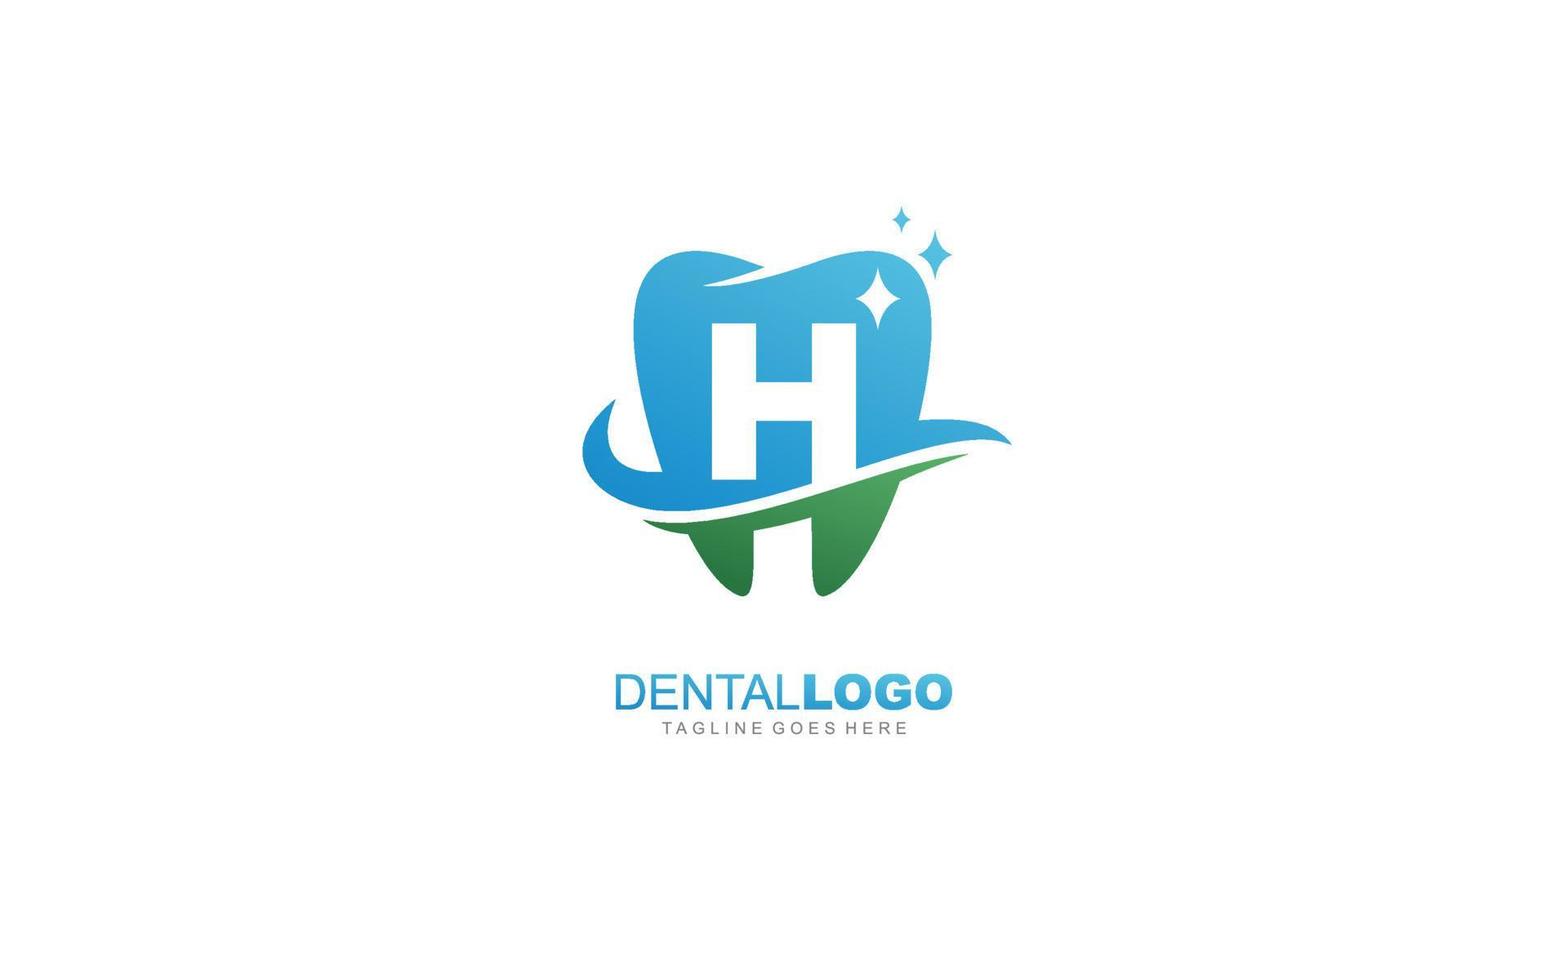 h logo dentista para empresa de marca. ilustración de vector de plantilla de carta para su marca.